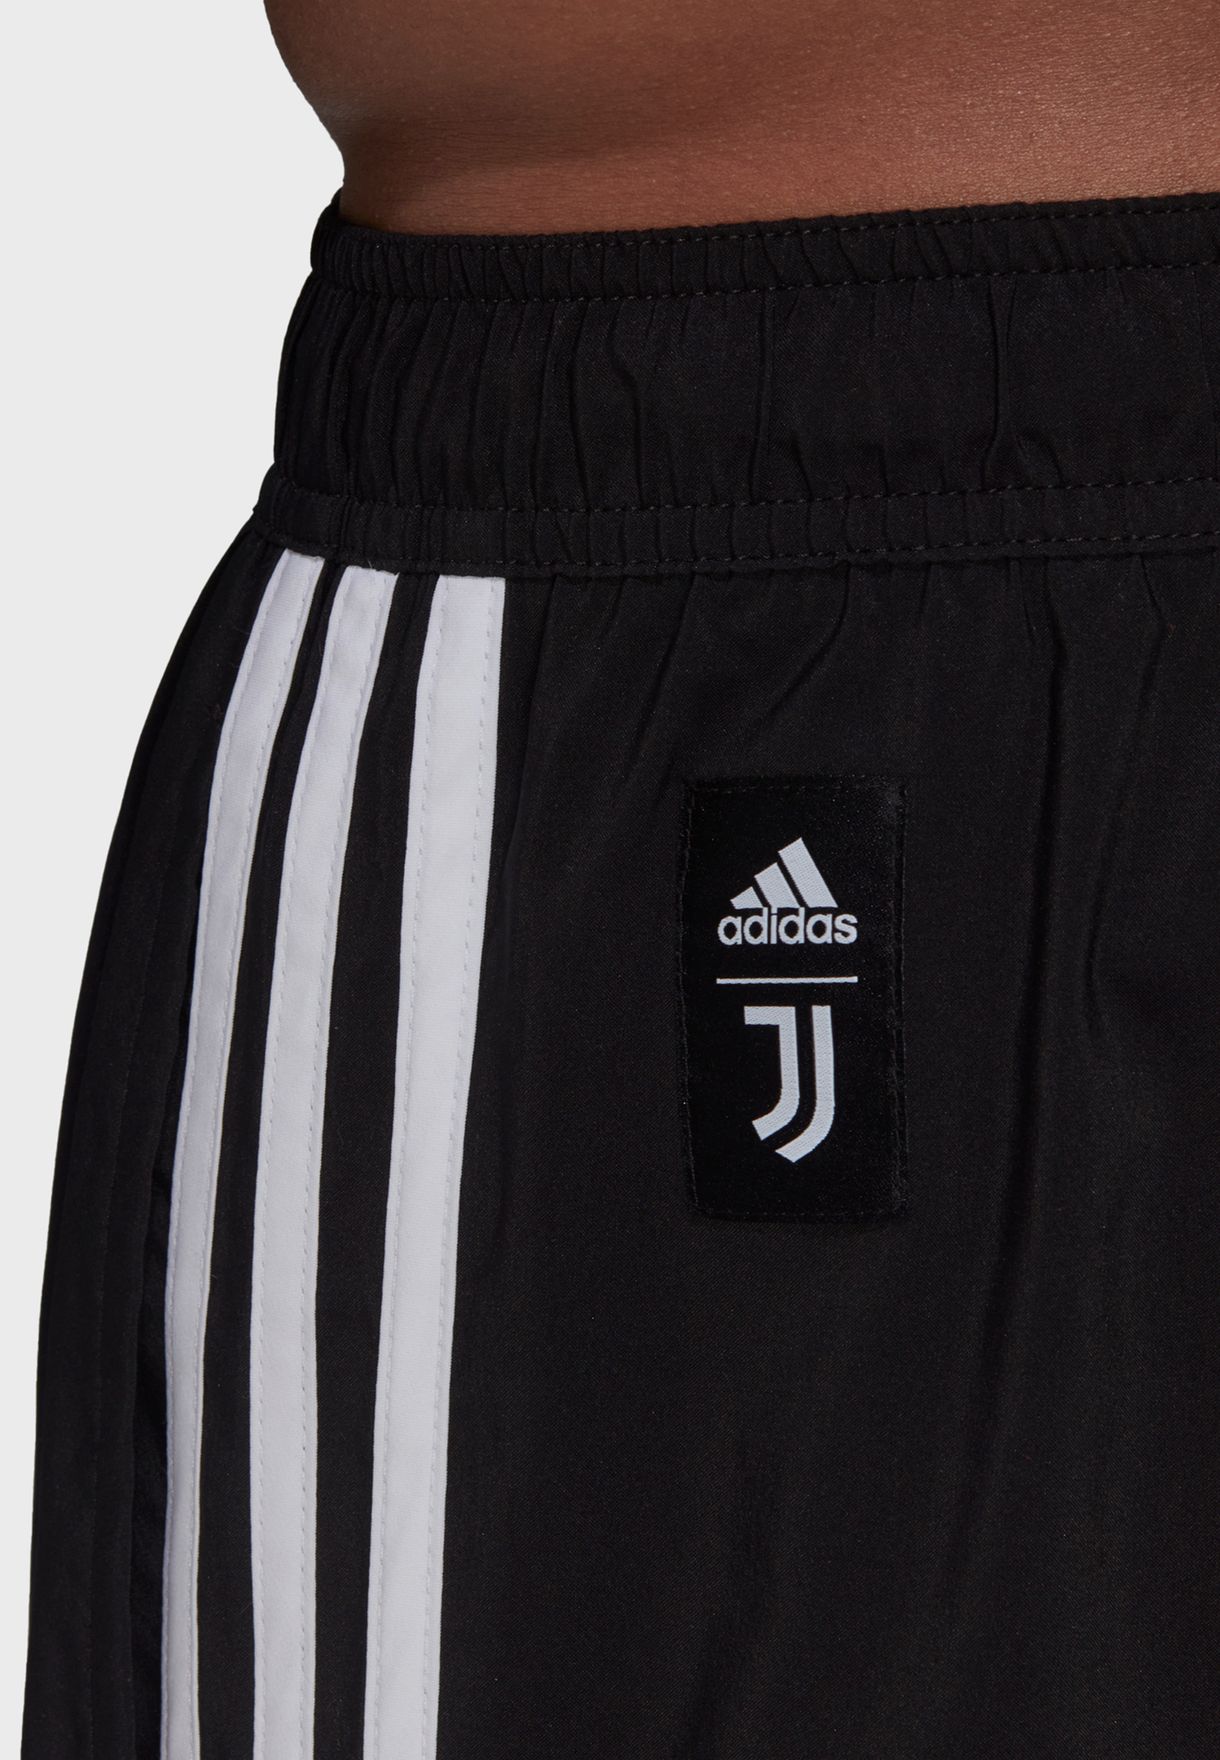 Juventus Classic Shorts